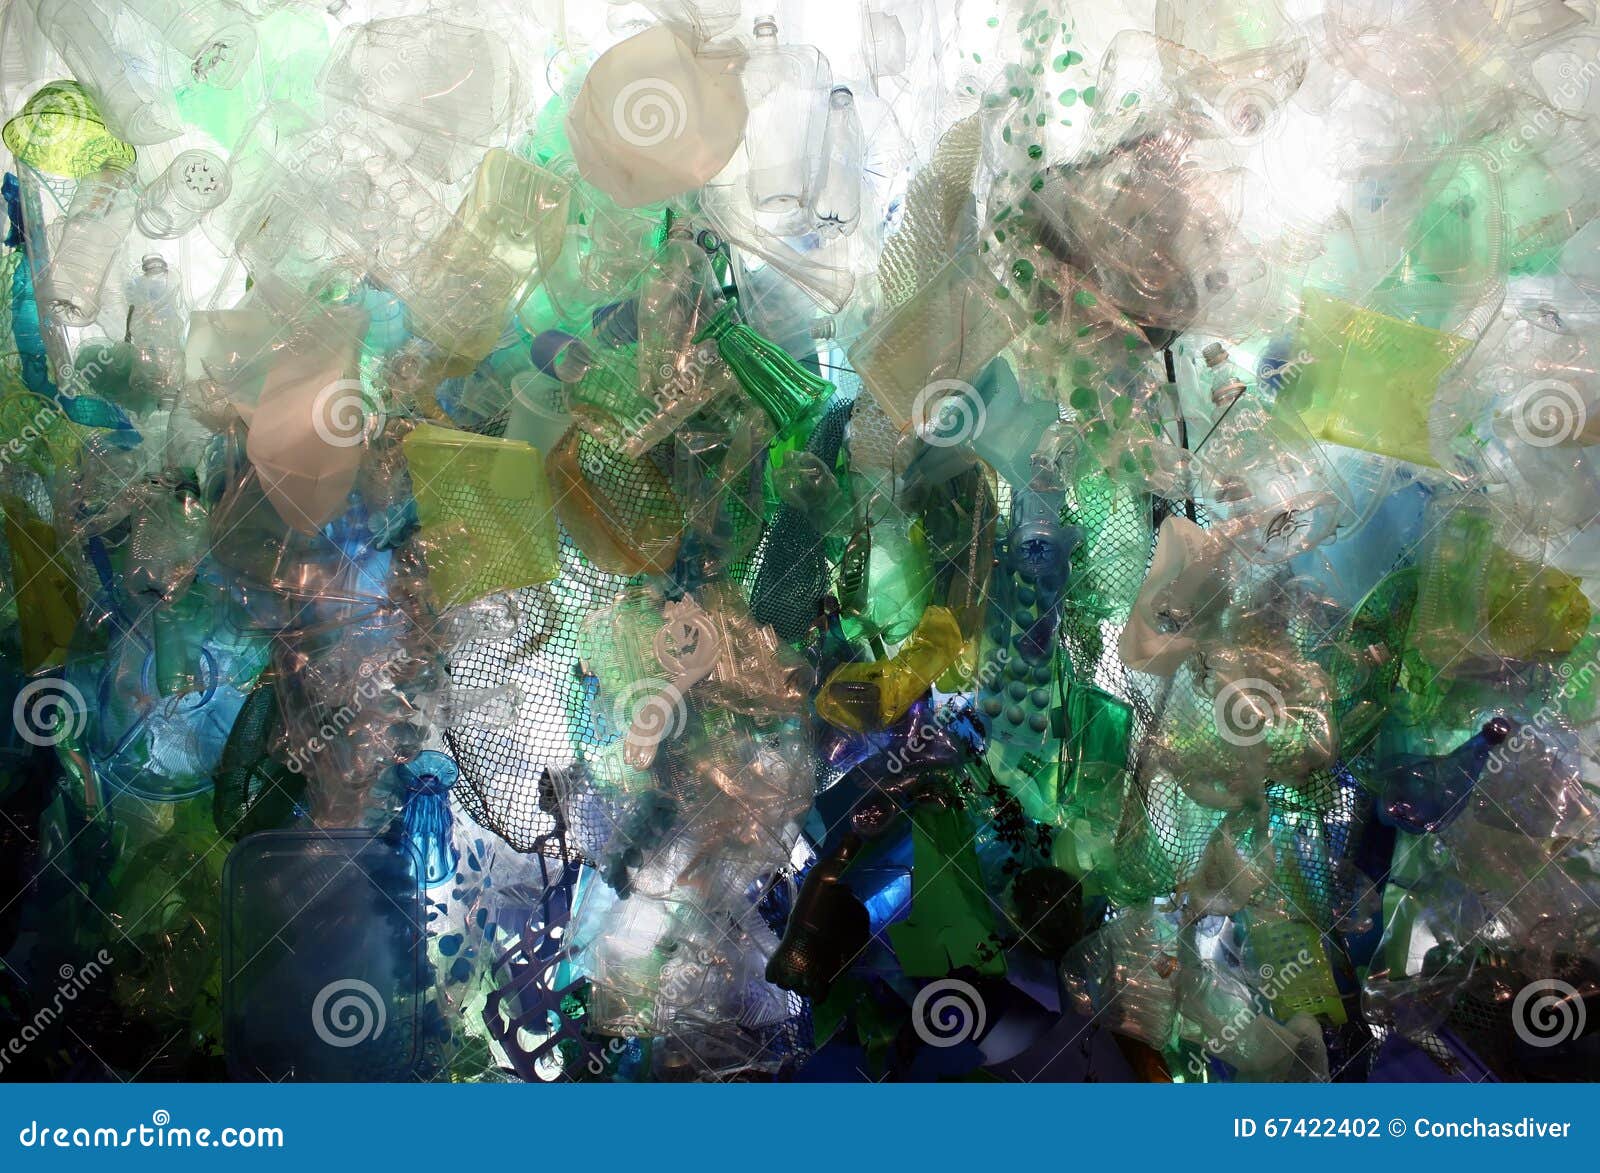 plastic ocean debris